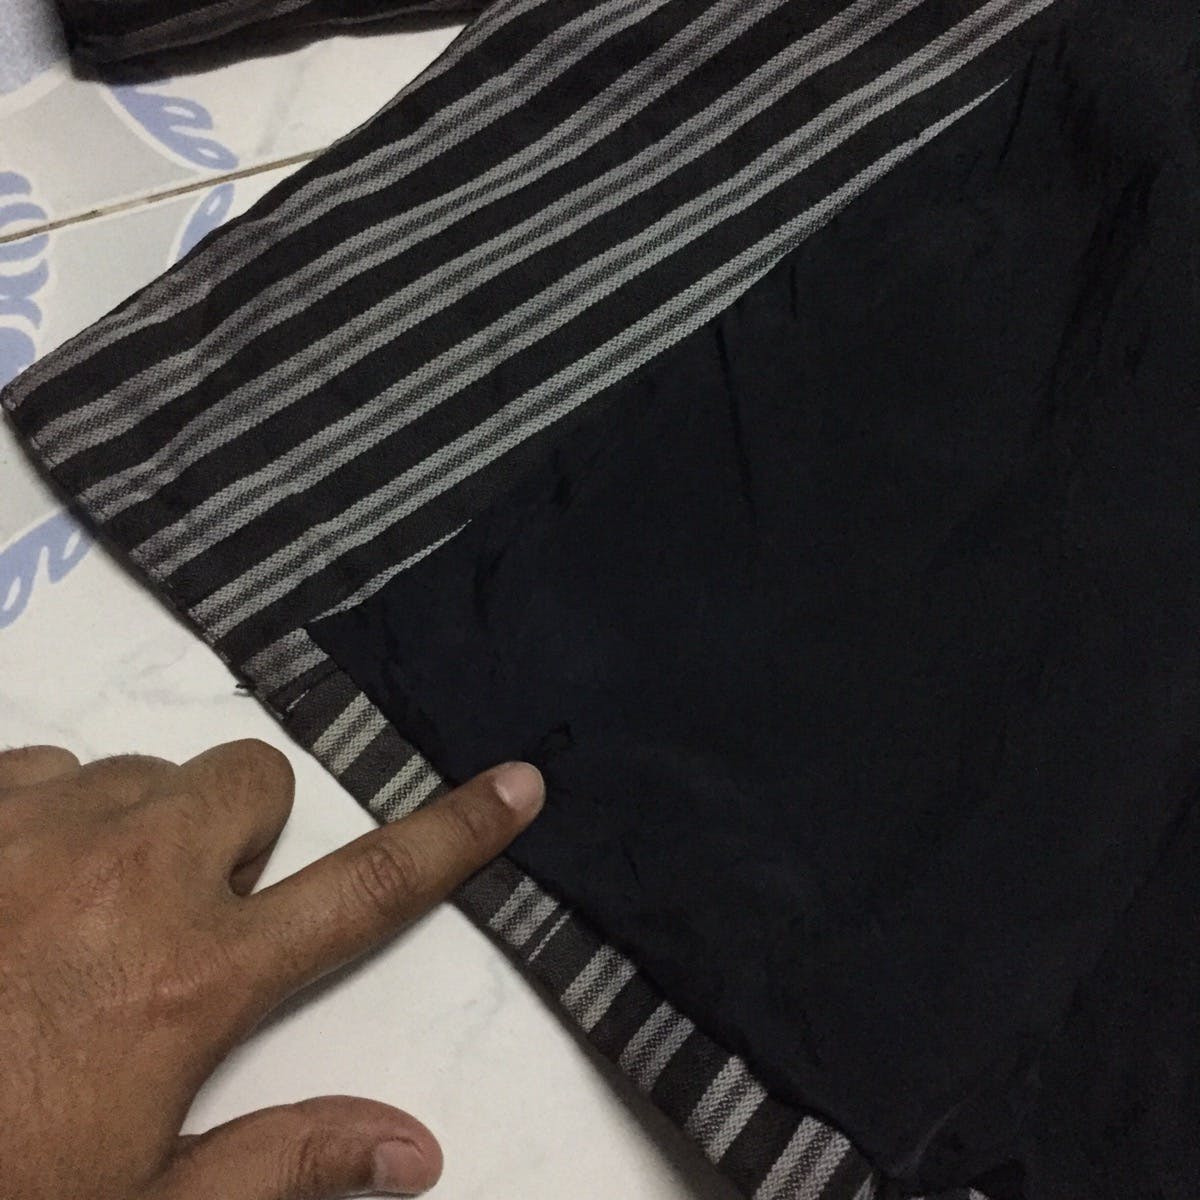 Kenzo Zebra Stripes Jacket Coat Made in Japan - 19